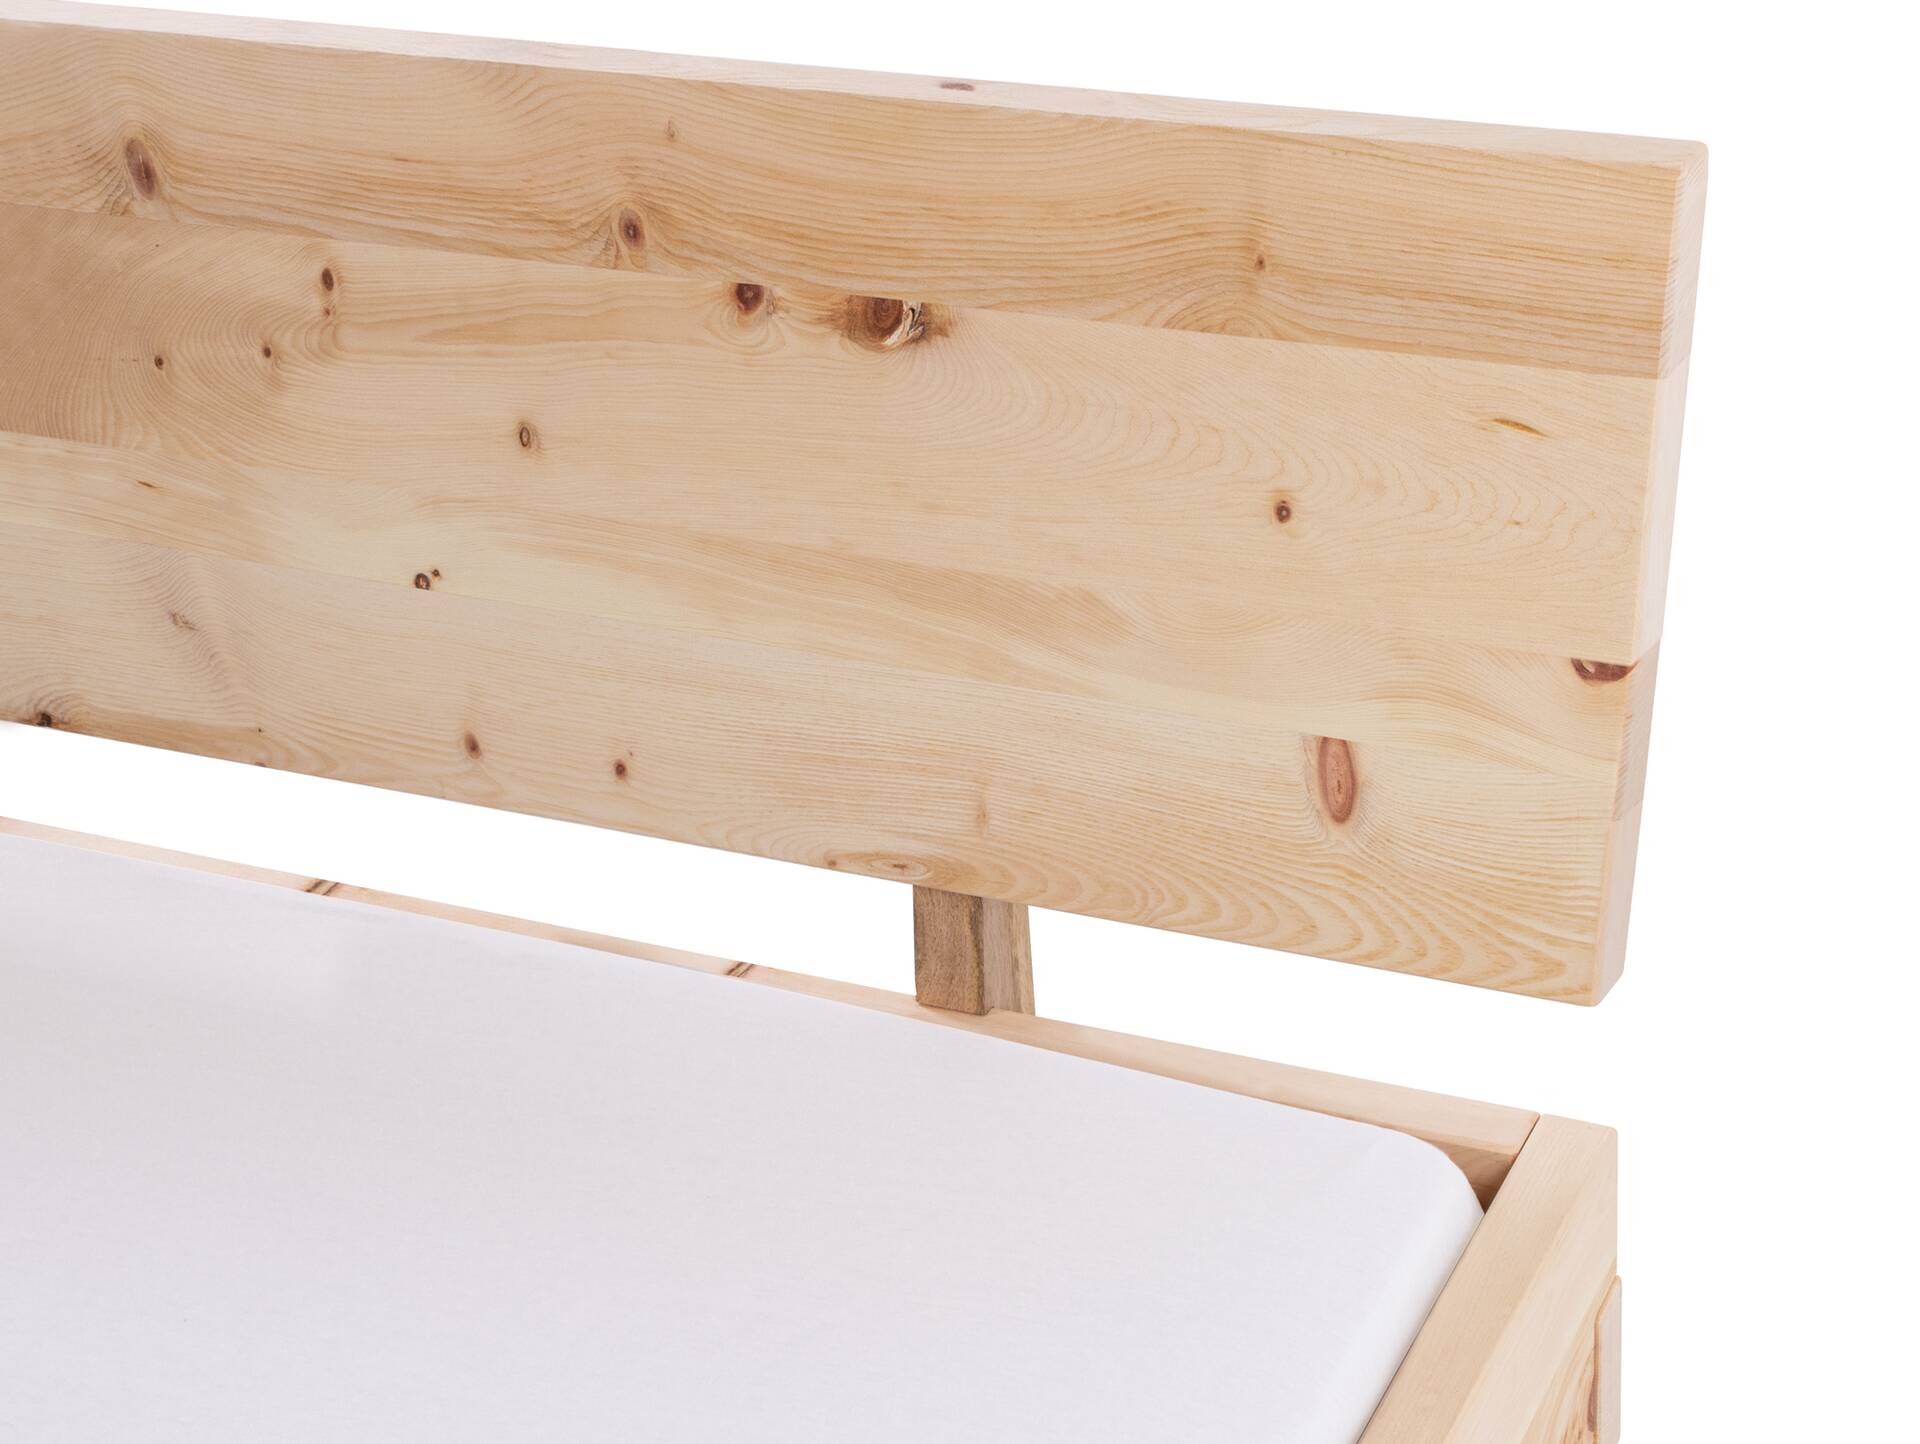 ZARUBA Zirbenbett mit Holz-Kufen/Holzkopfteil, Material Massivholz, Zirbe unbehandelt, mit/ohne Kopfteil 120 x 220 cm | mit Kopfteil